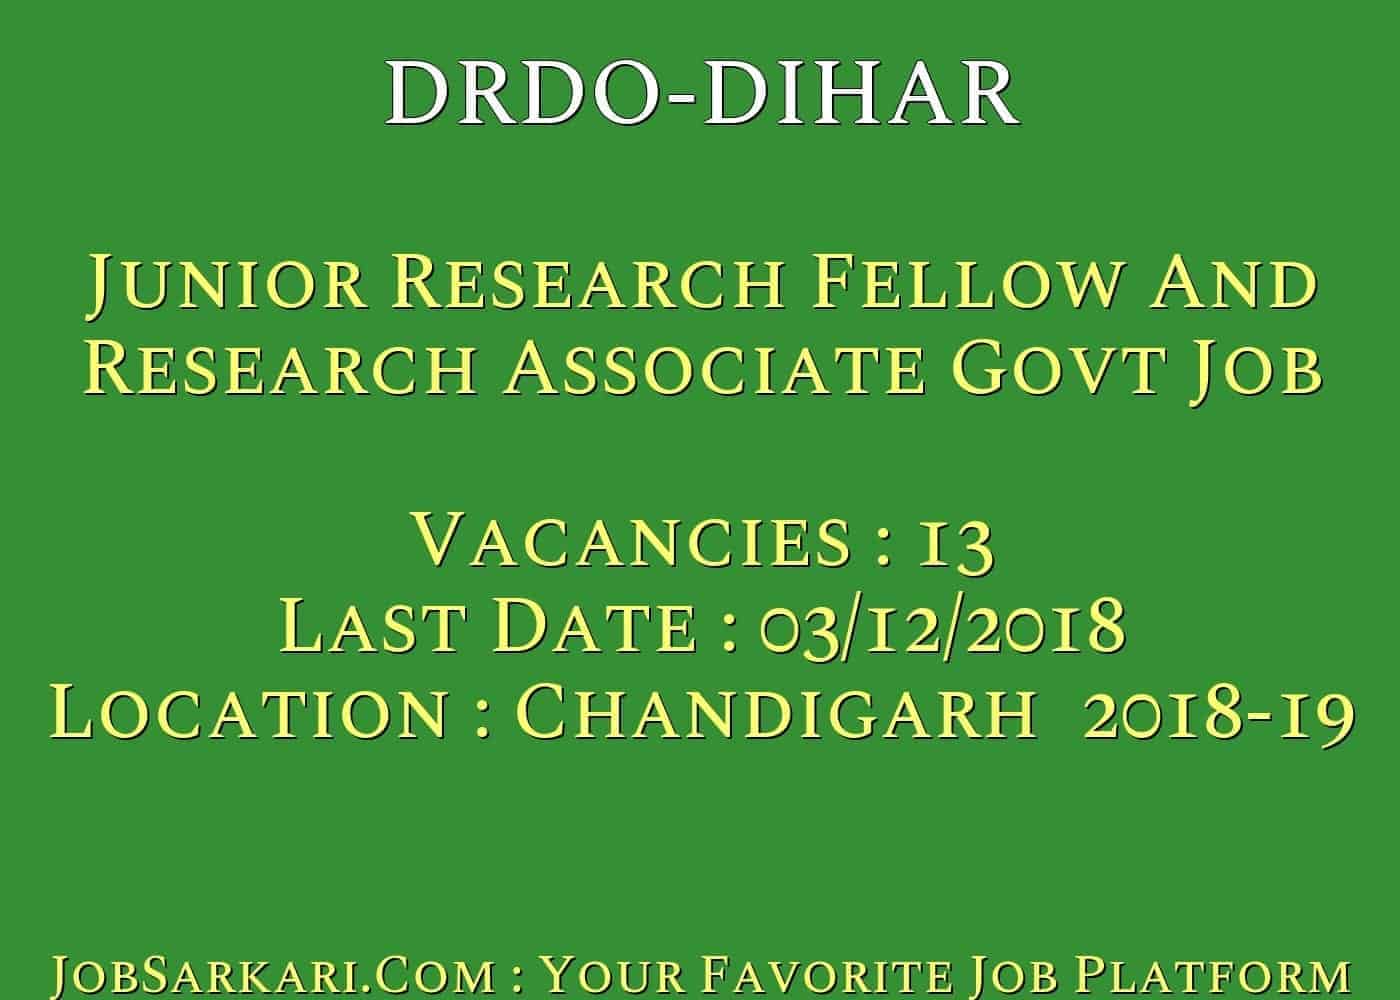 DIHAR Recruitment 2018 For Junior Research Fellow And Research Associate Govt Job